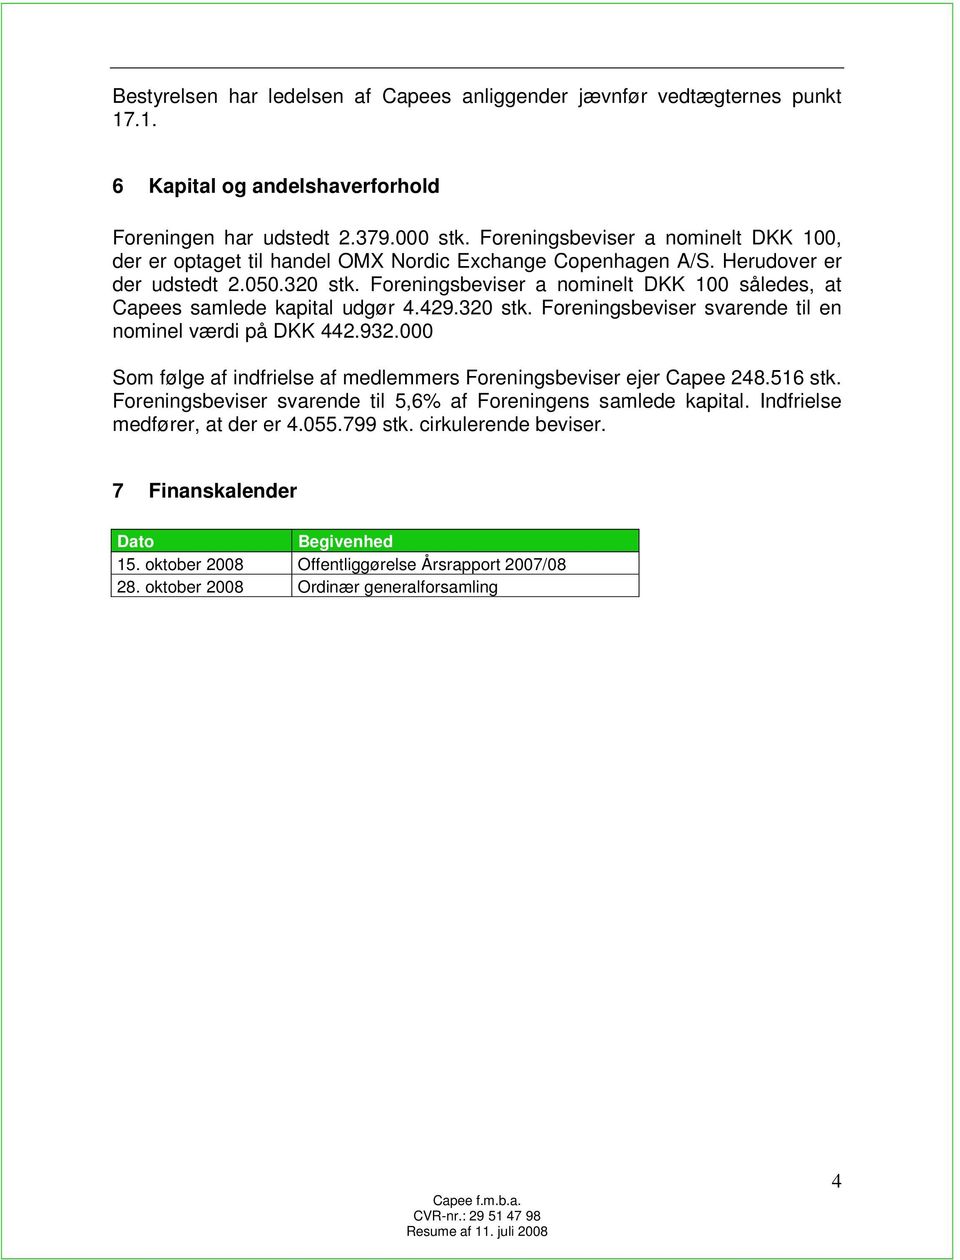 Foreningsbeviser a nominelt DKK 100 således, at Capees samlede kapital udgør 4.429.320 stk. Foreningsbeviser svarende til en nominel værdi på DKK 442.932.